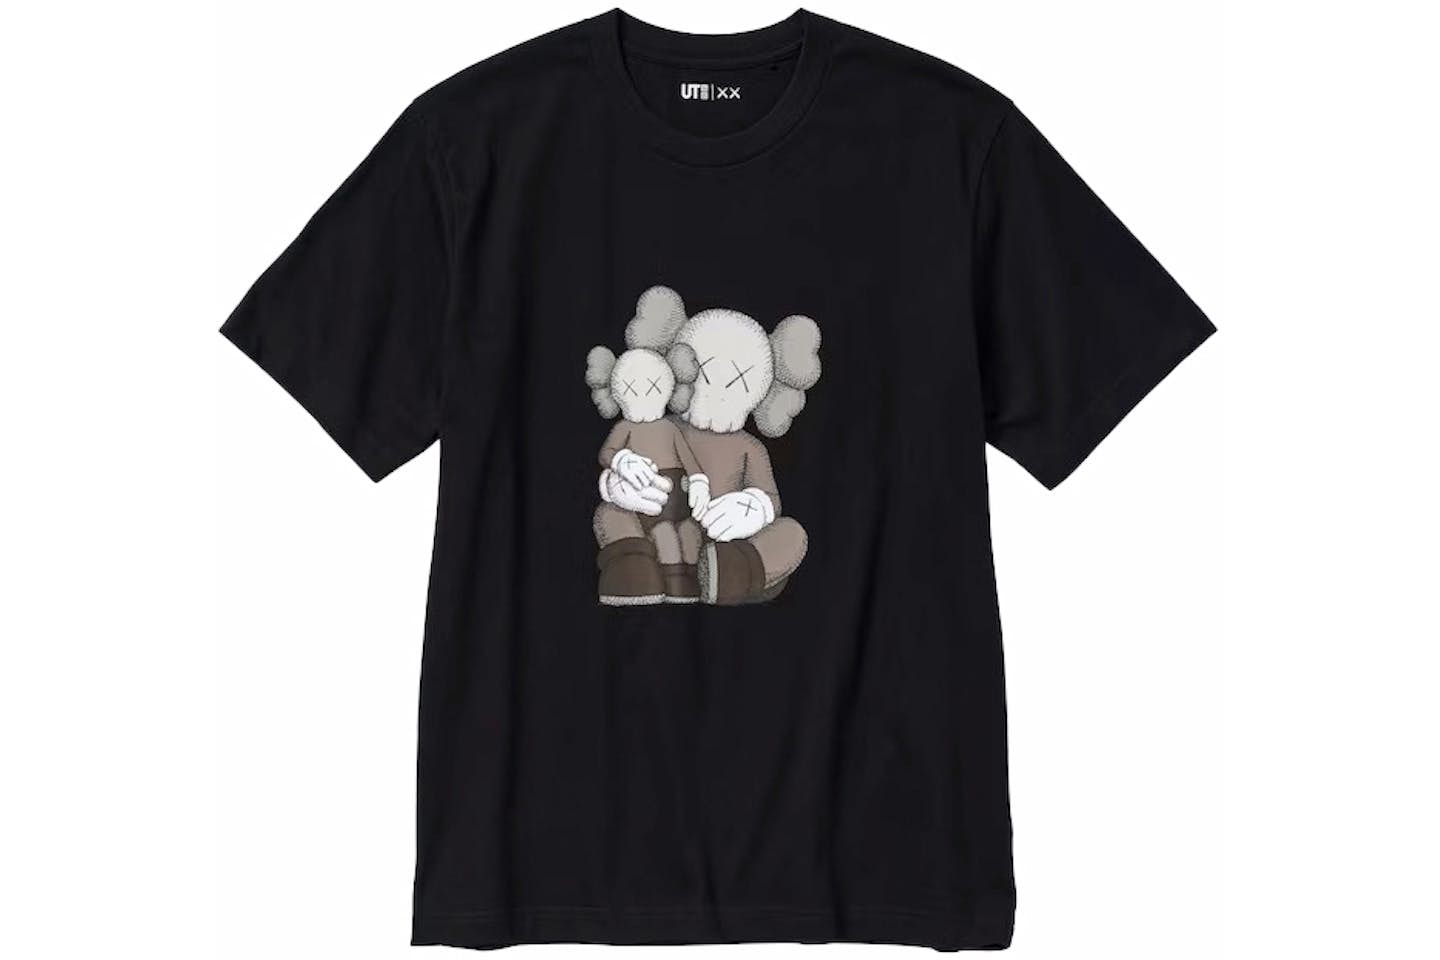 KAWS x Uniqlo UT Short Sleeve Graphic Black T-shirt